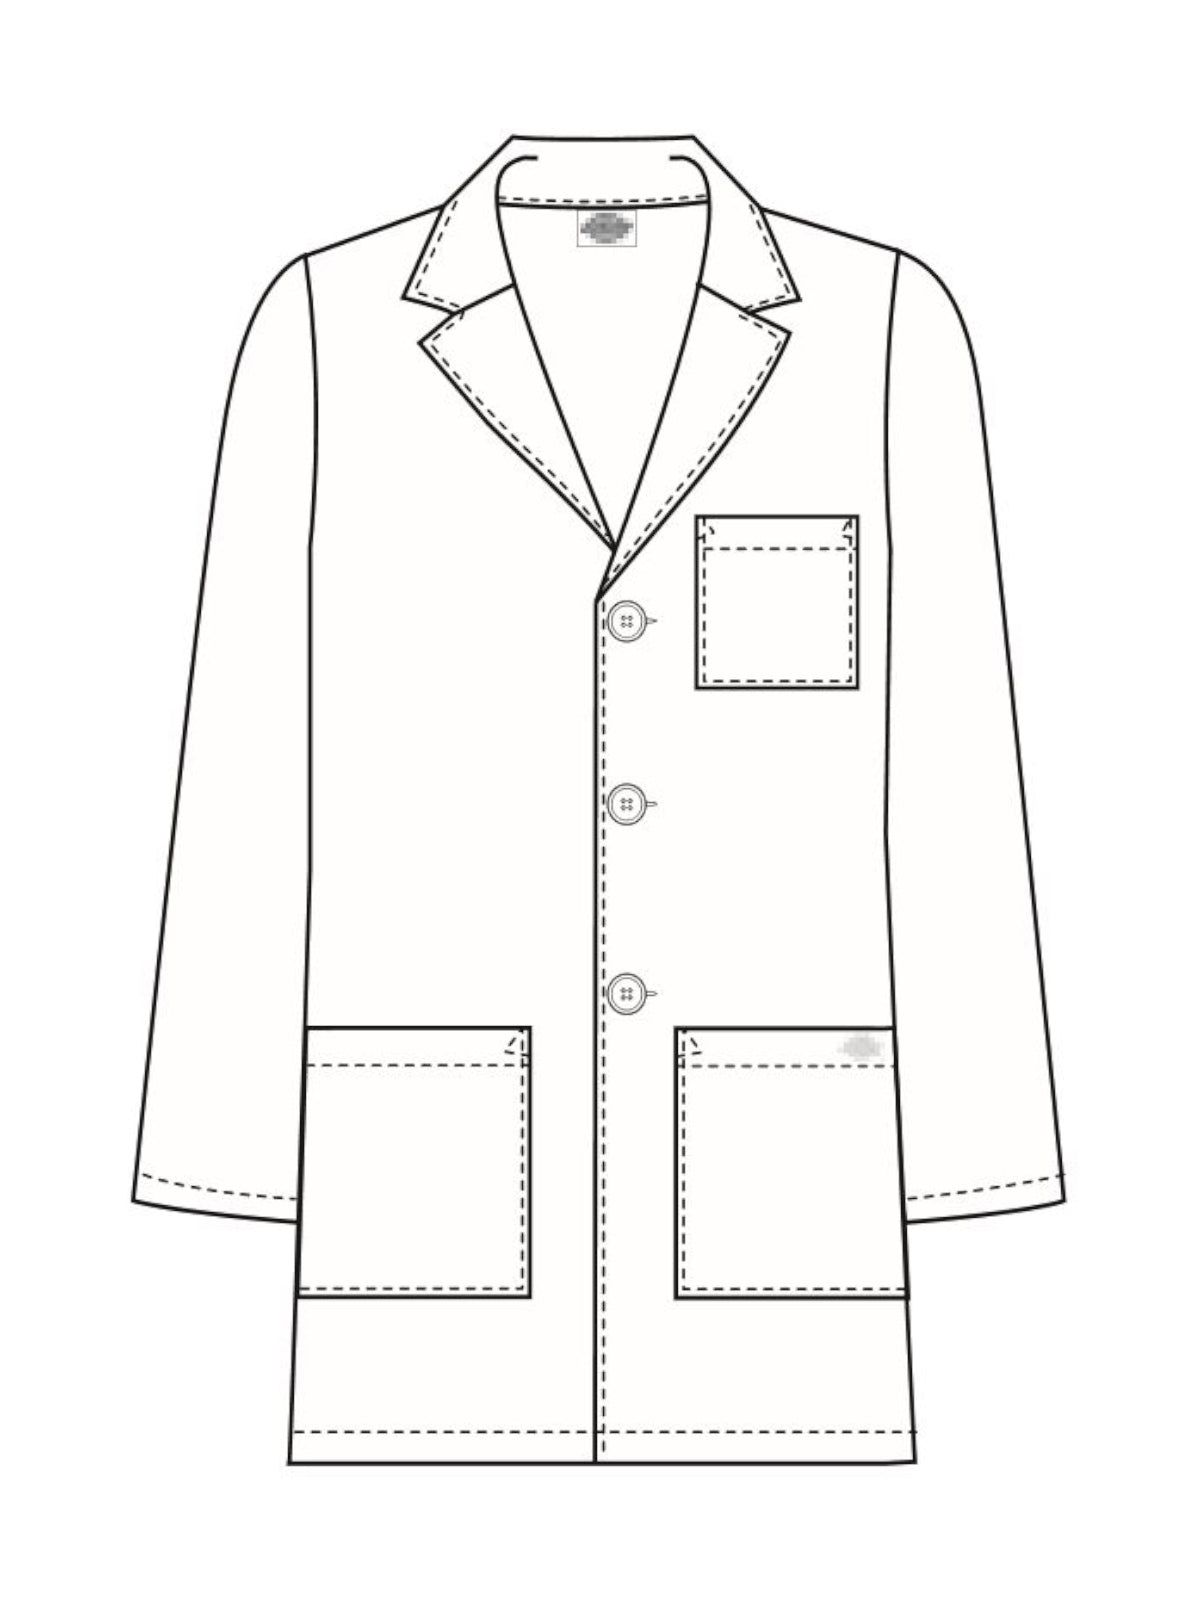 31" Men's Consultation Lab Coat